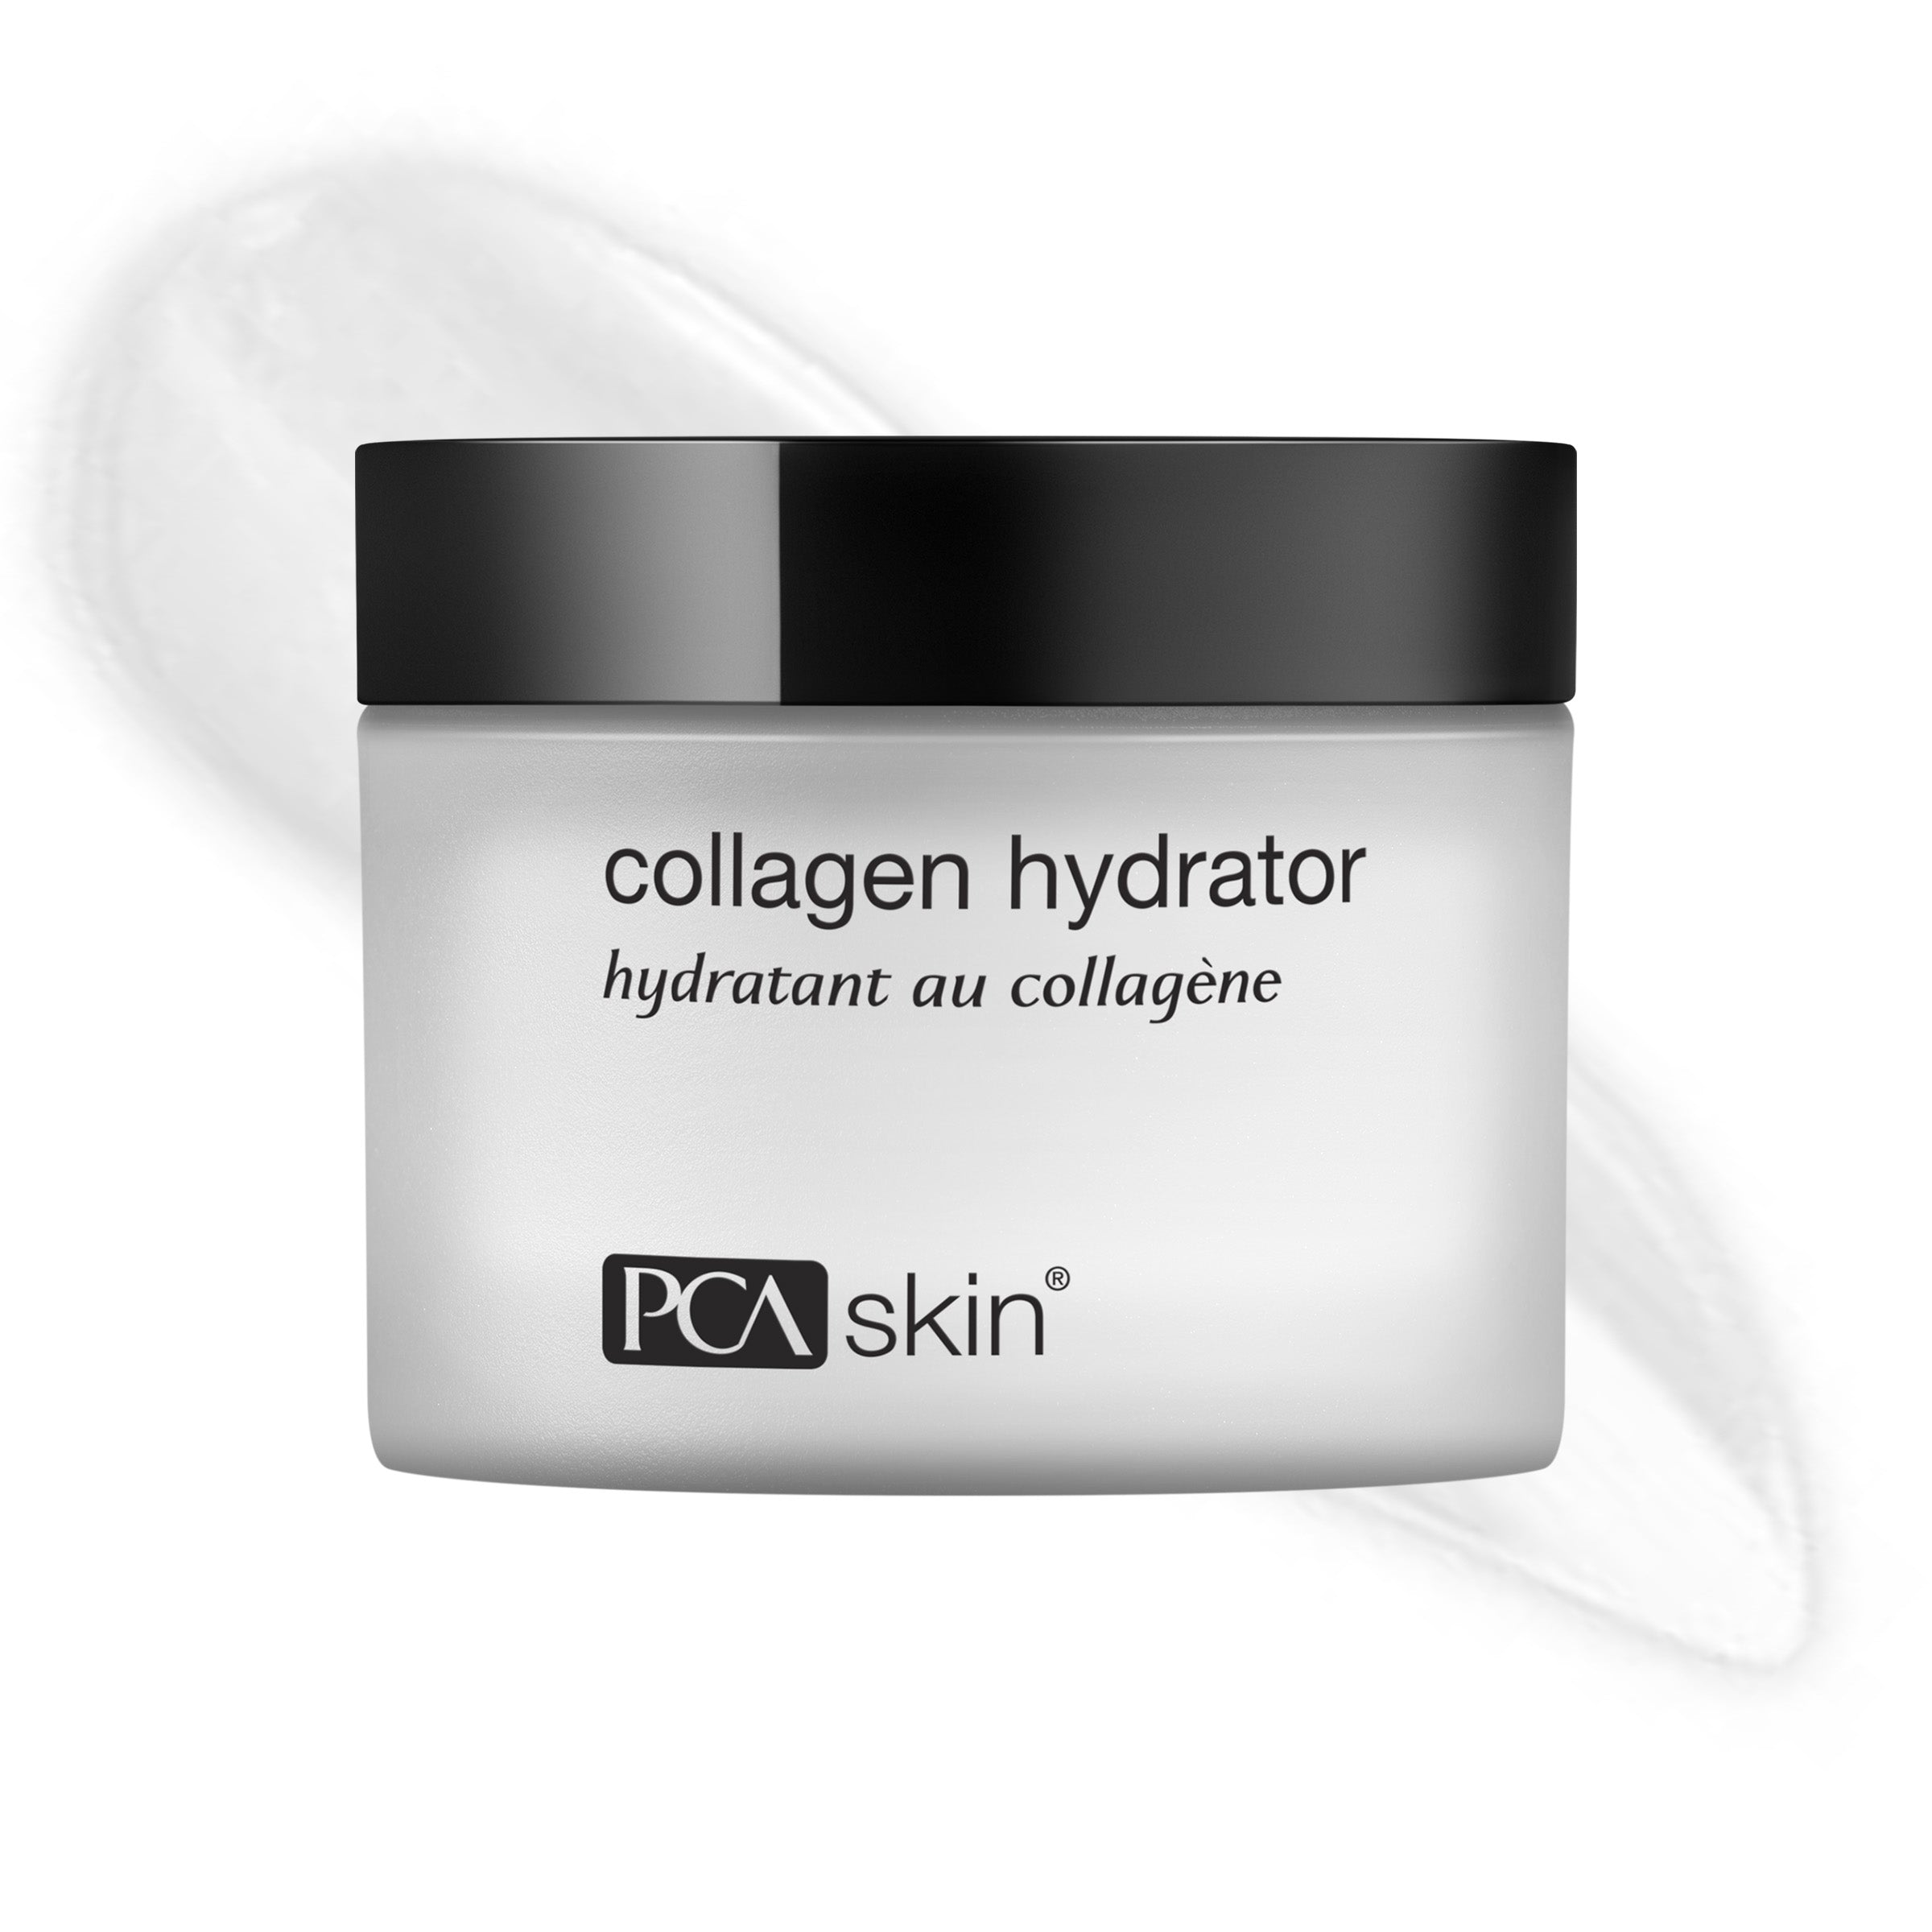 Hidratant cu colagen pentru piele PCA (1.7 oz)